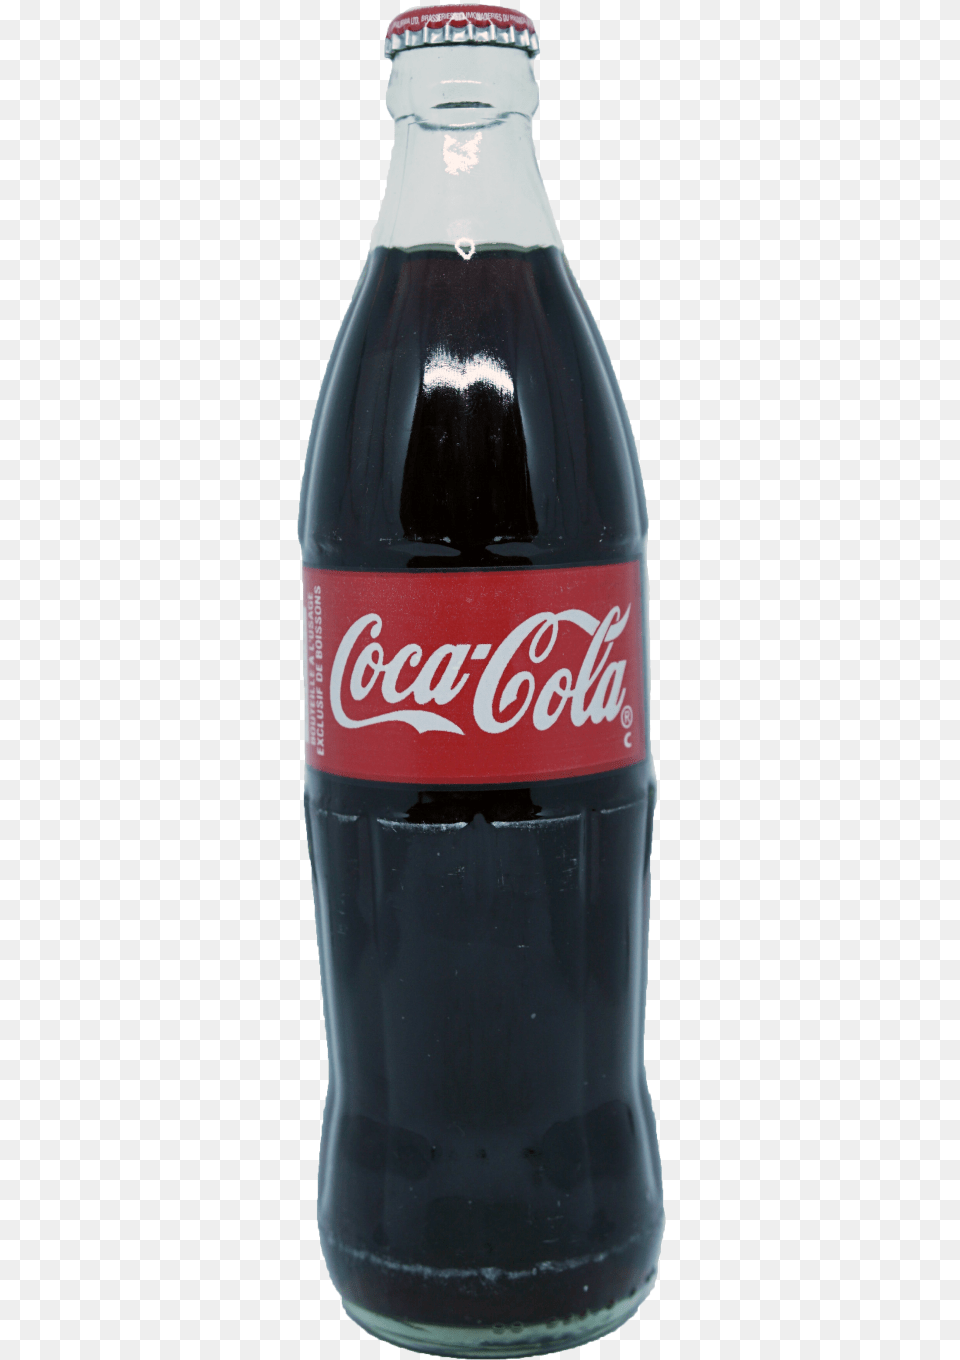 Fanta Bottle 500ml In Beverages Imagen Coca Cola 500 Ml, Beverage, Coke, Soda, Alcohol Free Transparent Png